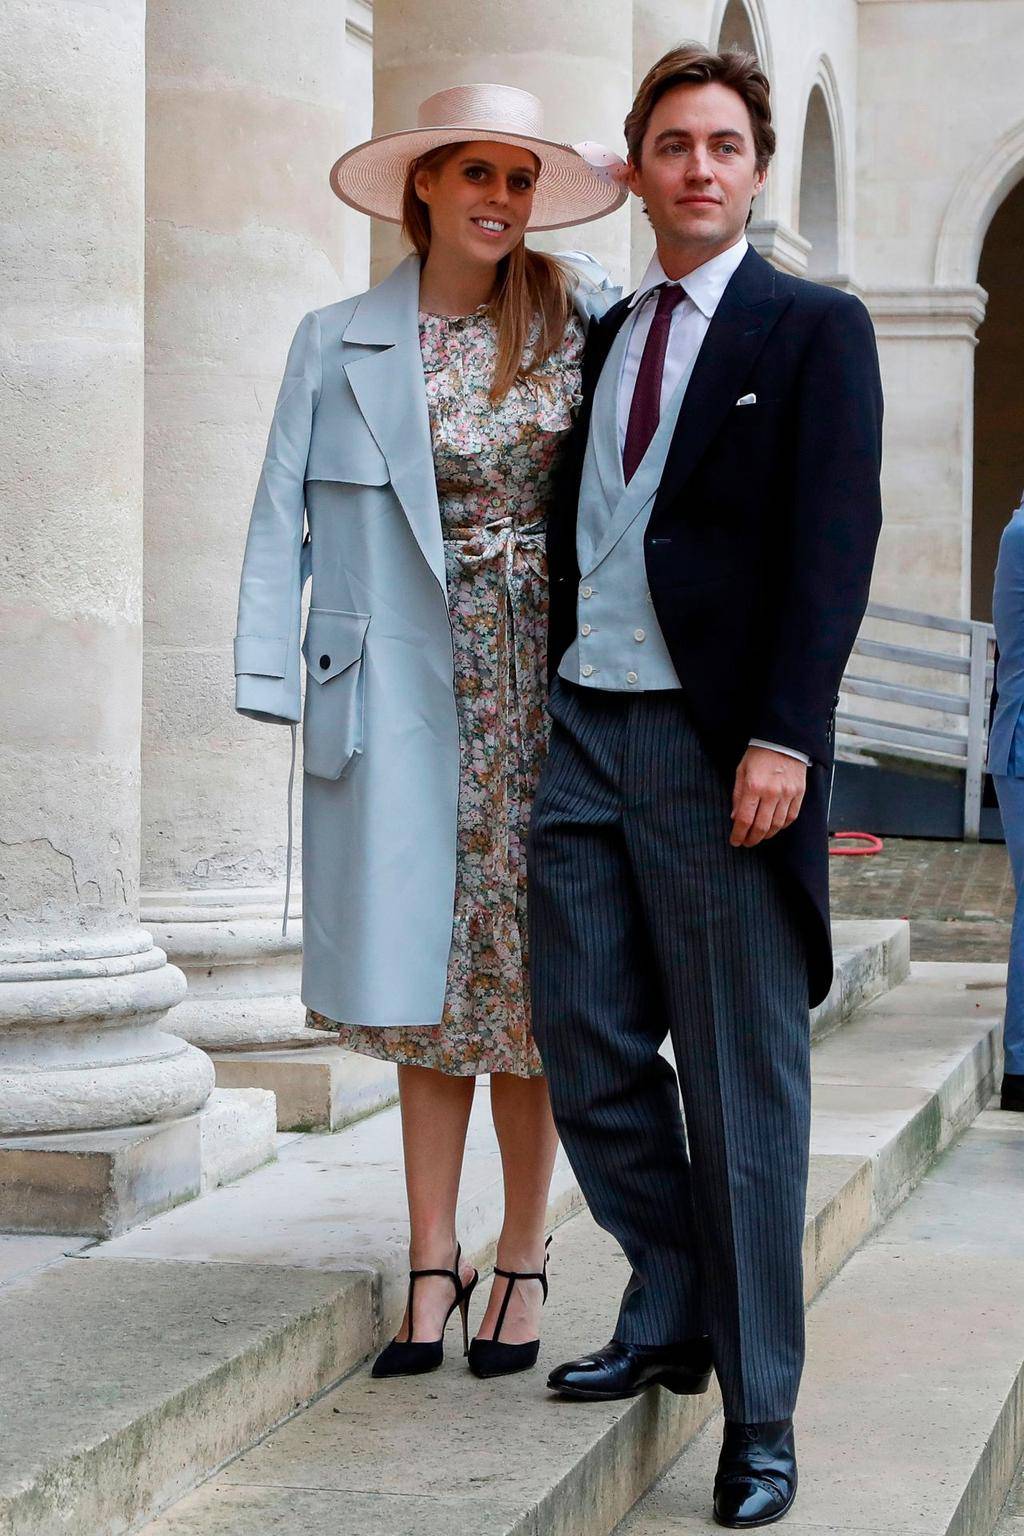 Księżna Beatrycze i Edoardo Mapelli Mozzi na ślubie księcia Napoleona i hrabiny Olympii Arco-Zinneberg w katedrze Saint-Louis-des-Invalides w Paryżu, 19 października 2019 roku.